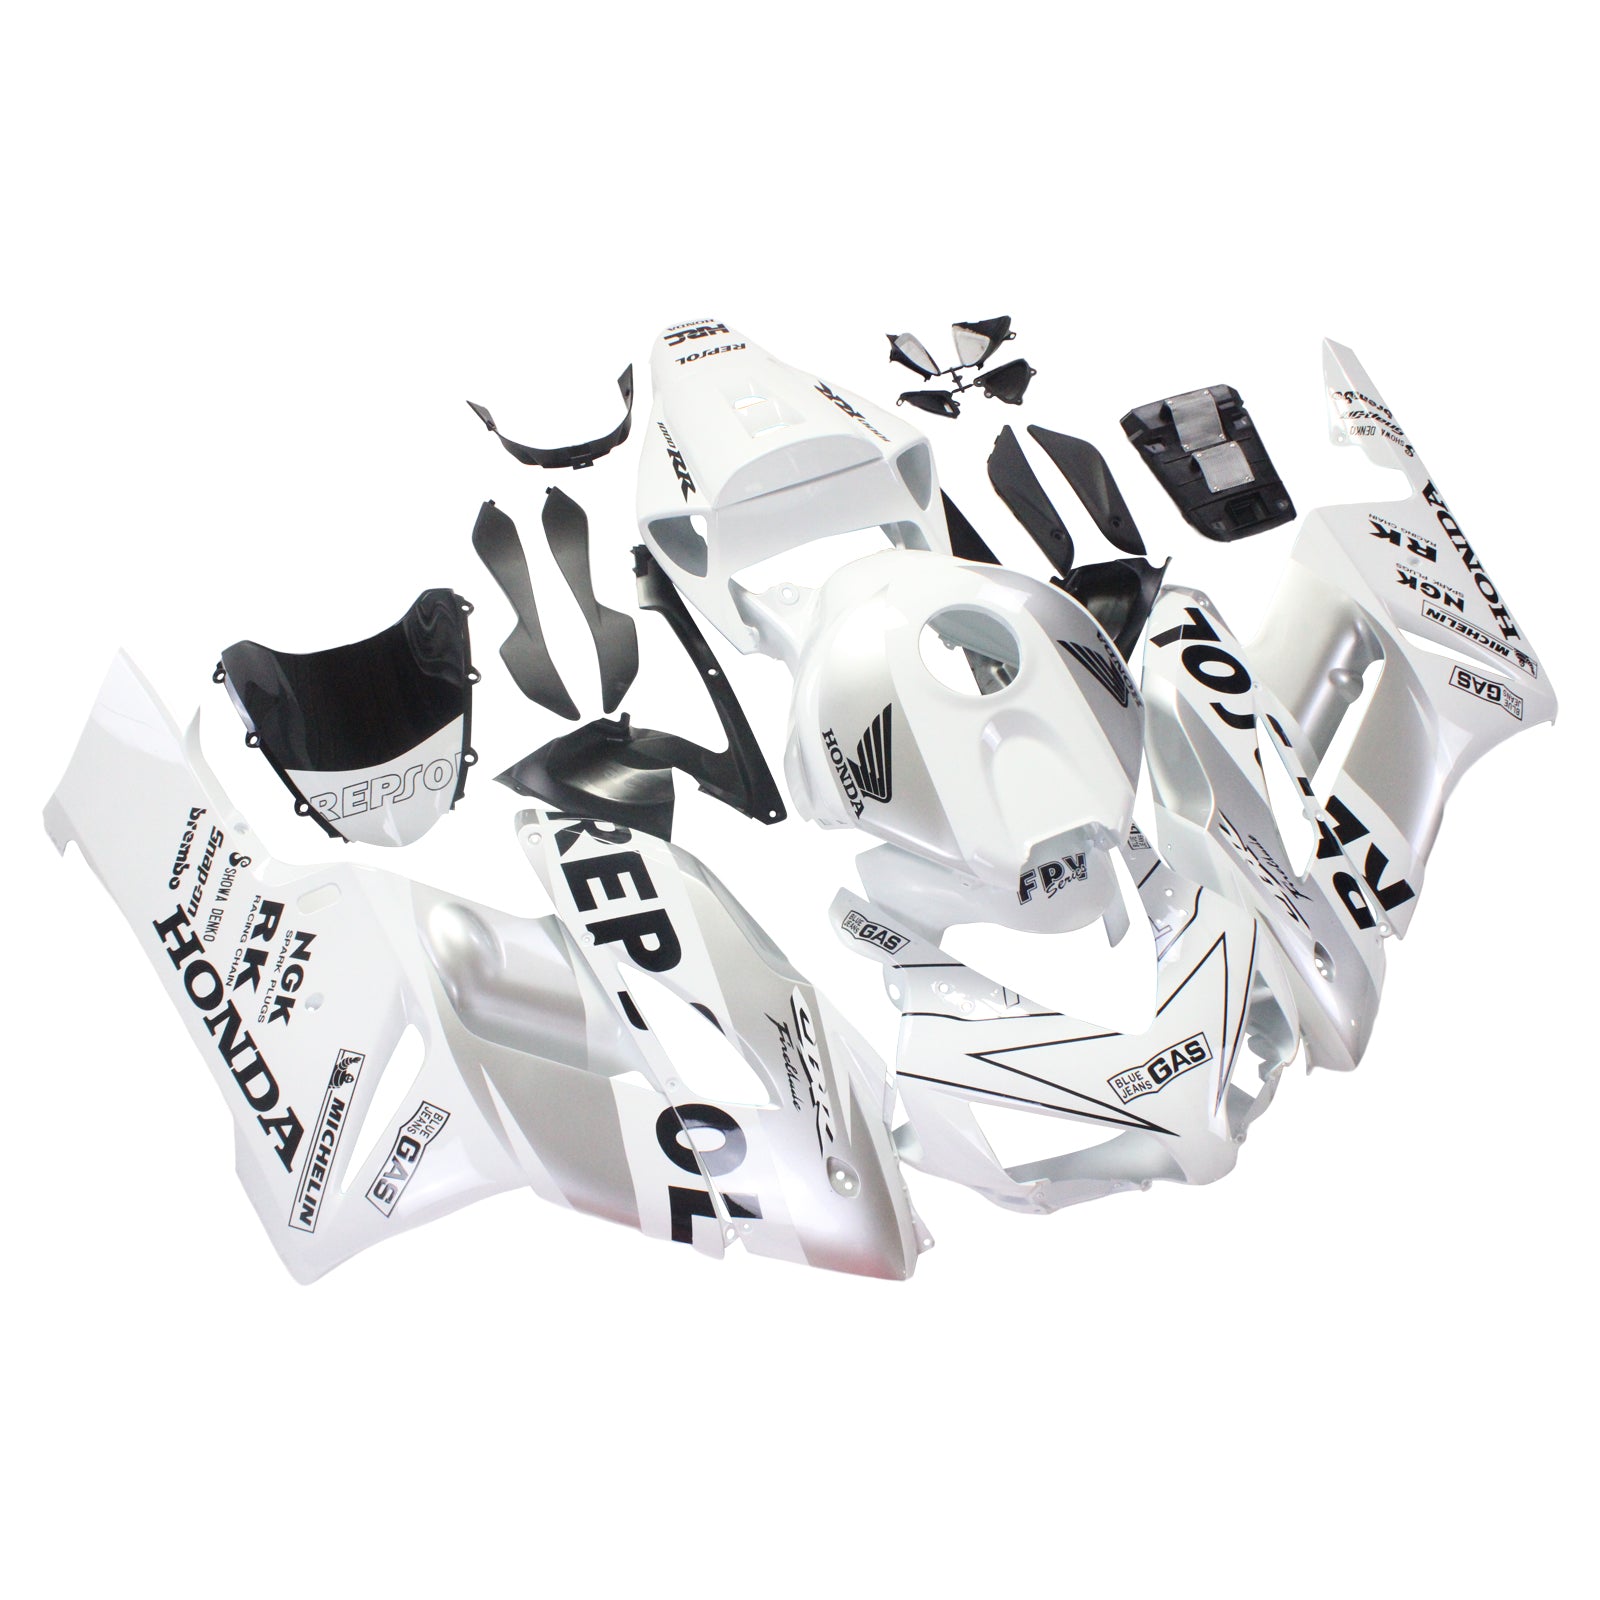 Amotopart Verkleidungen Honda CBR1000RR 2004–2005 Verkleidung Weiß Silber Repsol Racing Verkleidungsset